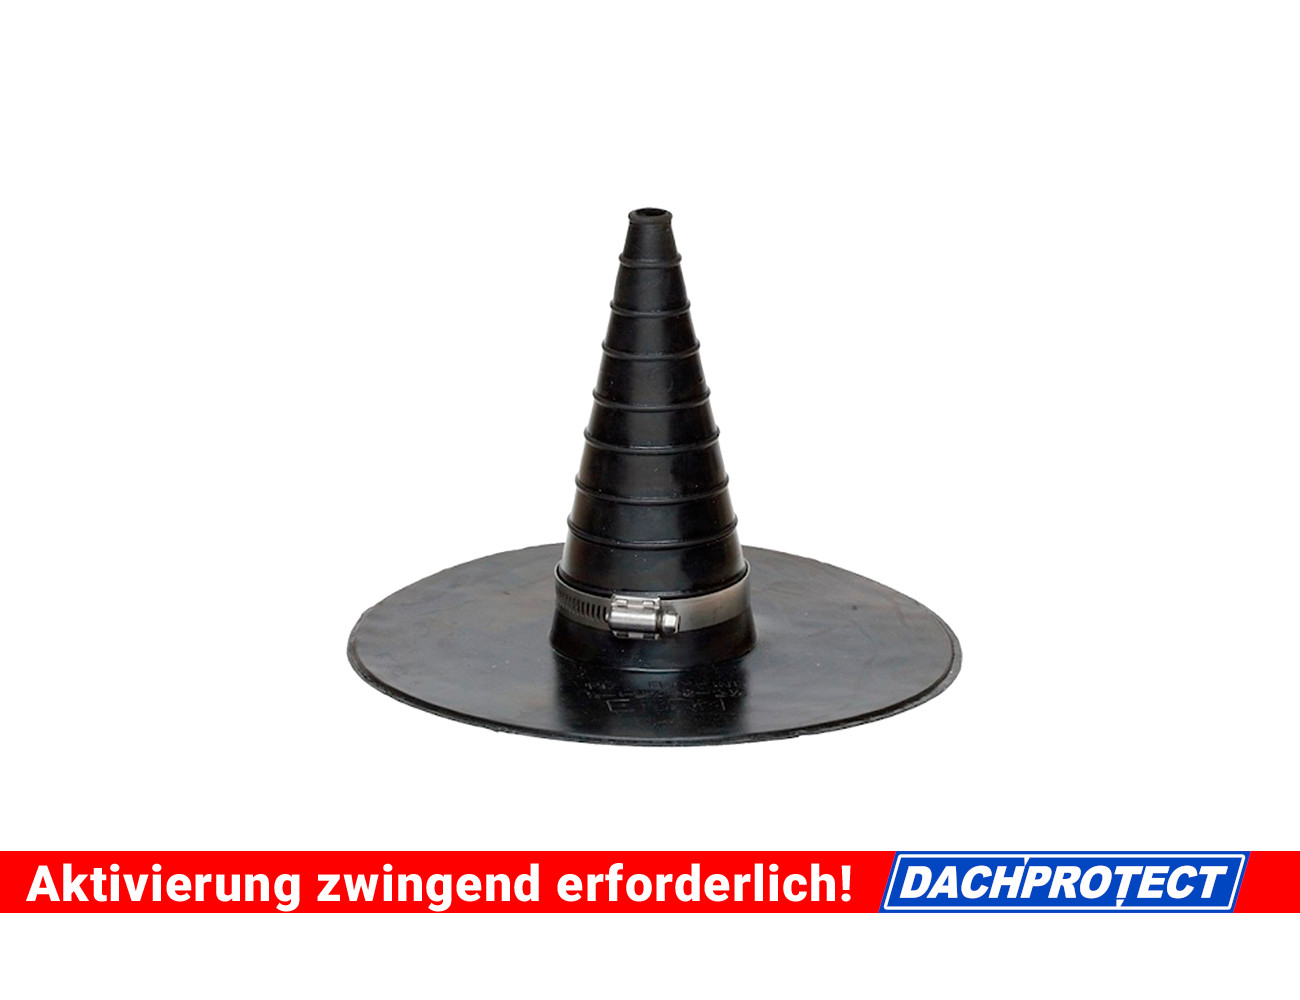 DACHPROTECT Rohrmanschette Durchmesser 15 - 75mm